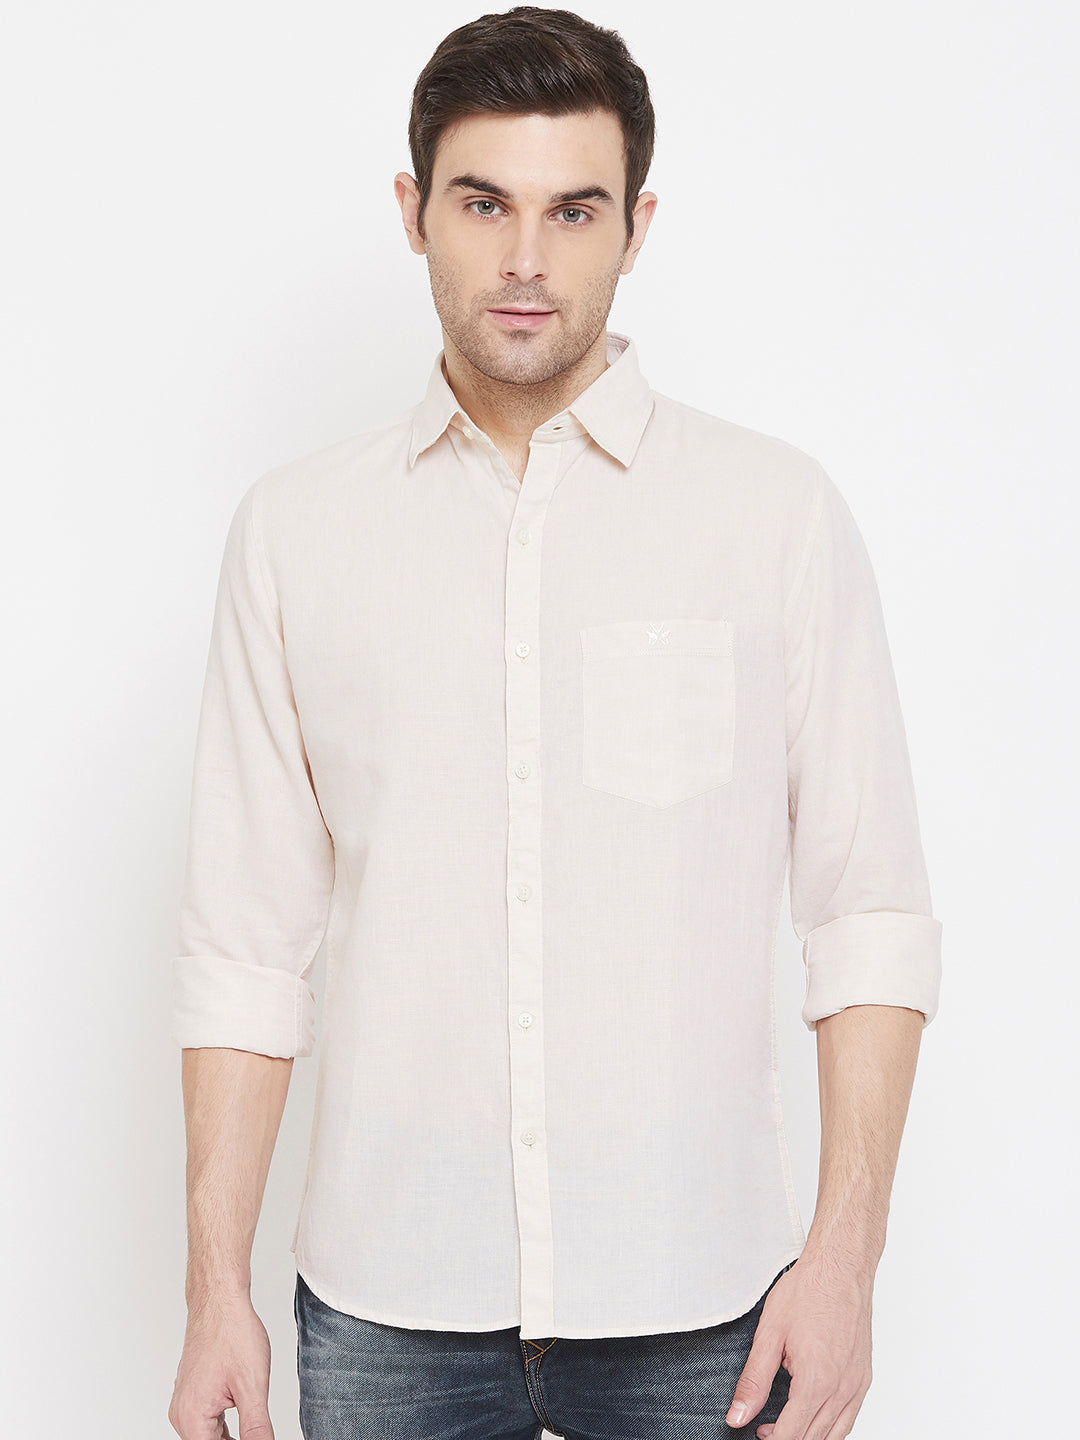 Cream Linen Slim Fit shirt - Men Shirts